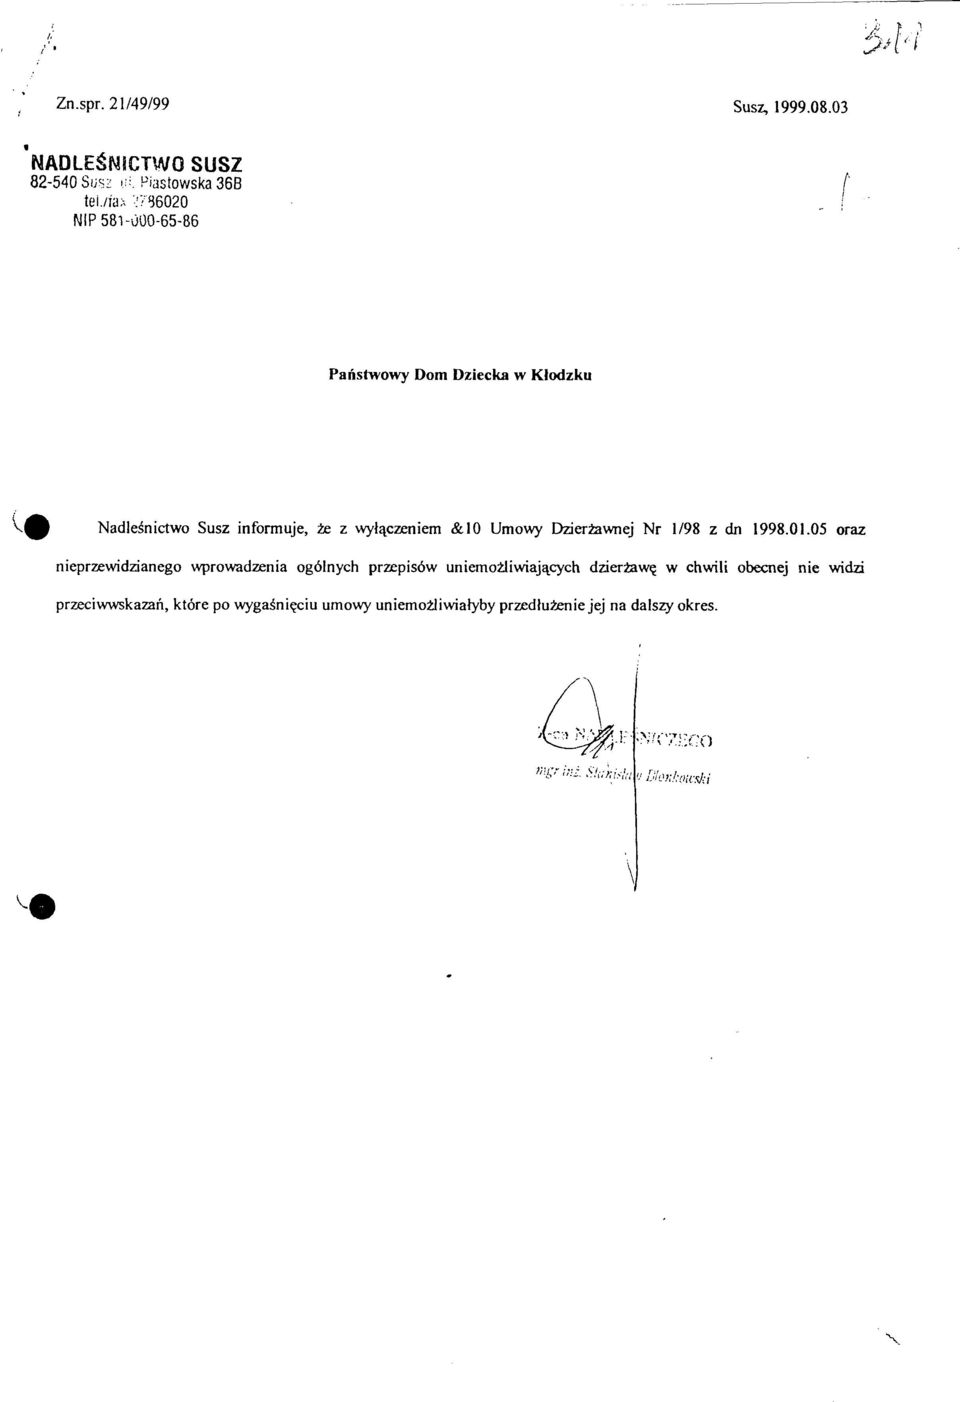 Umowy Dzierżawnej Nr 1/98 z dn 1998.01.